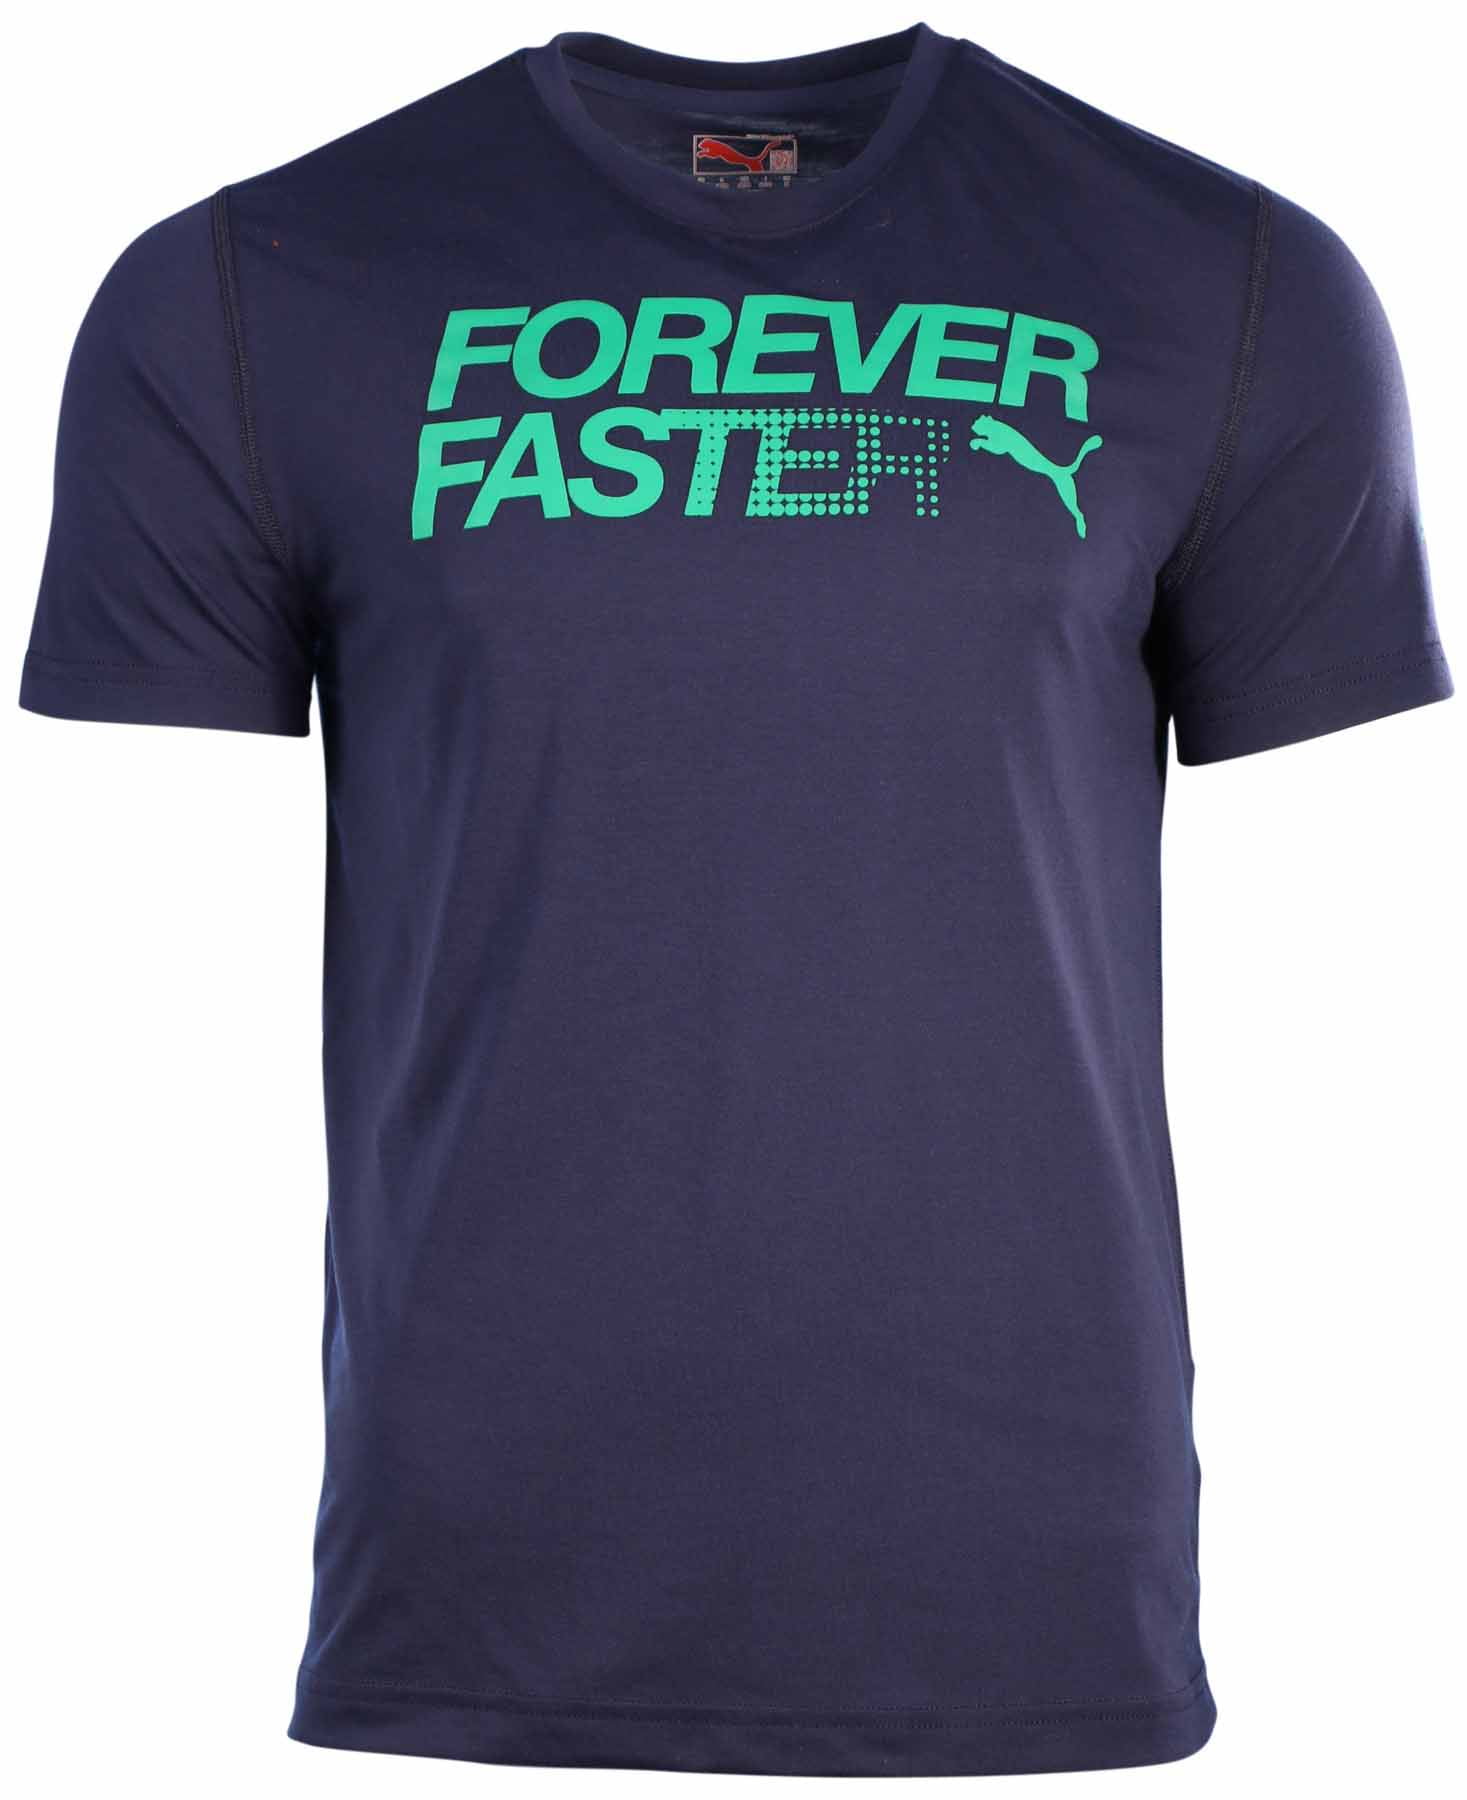 forever faster